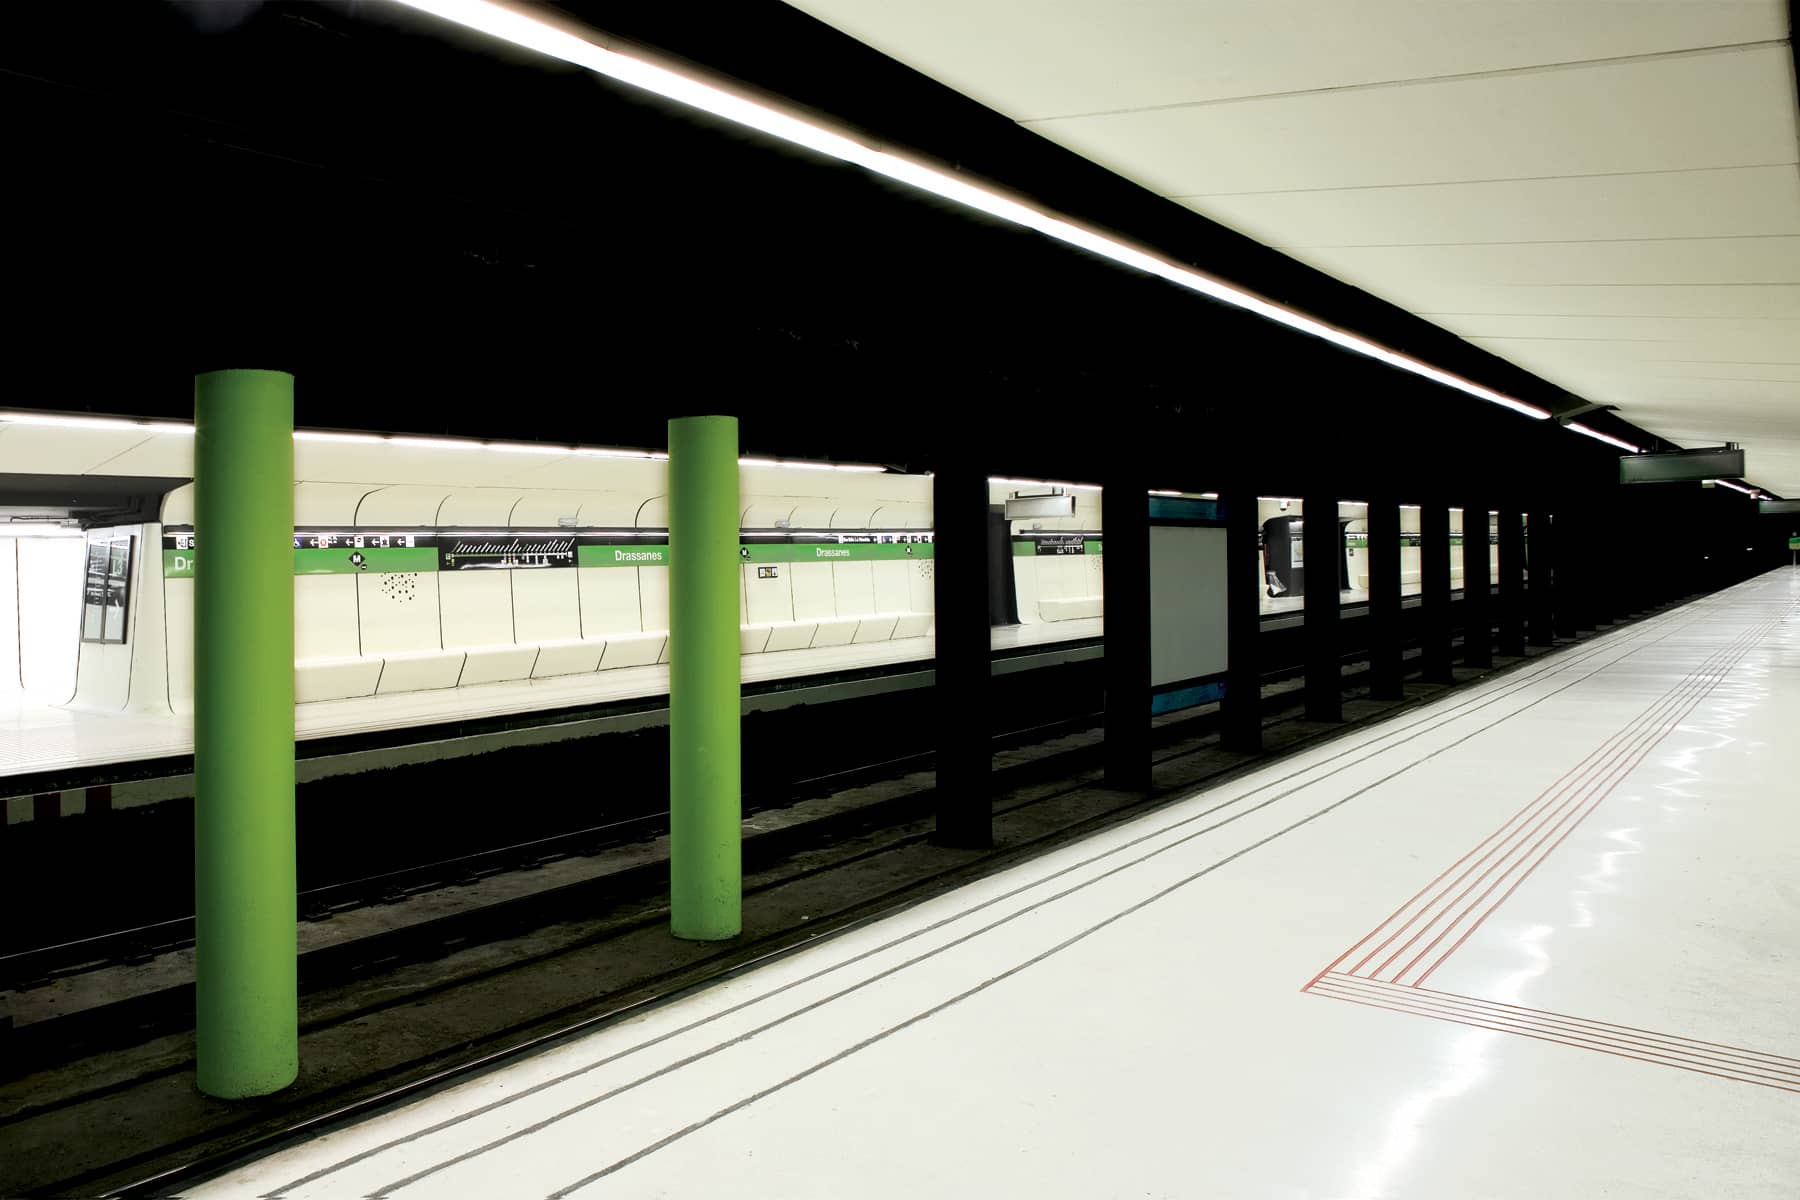 La estación de metro Drassanes fue uno de nuestros retos. Las piezas prefabricadas GRC nos permitieron crear un sistema continuo y adaptable.